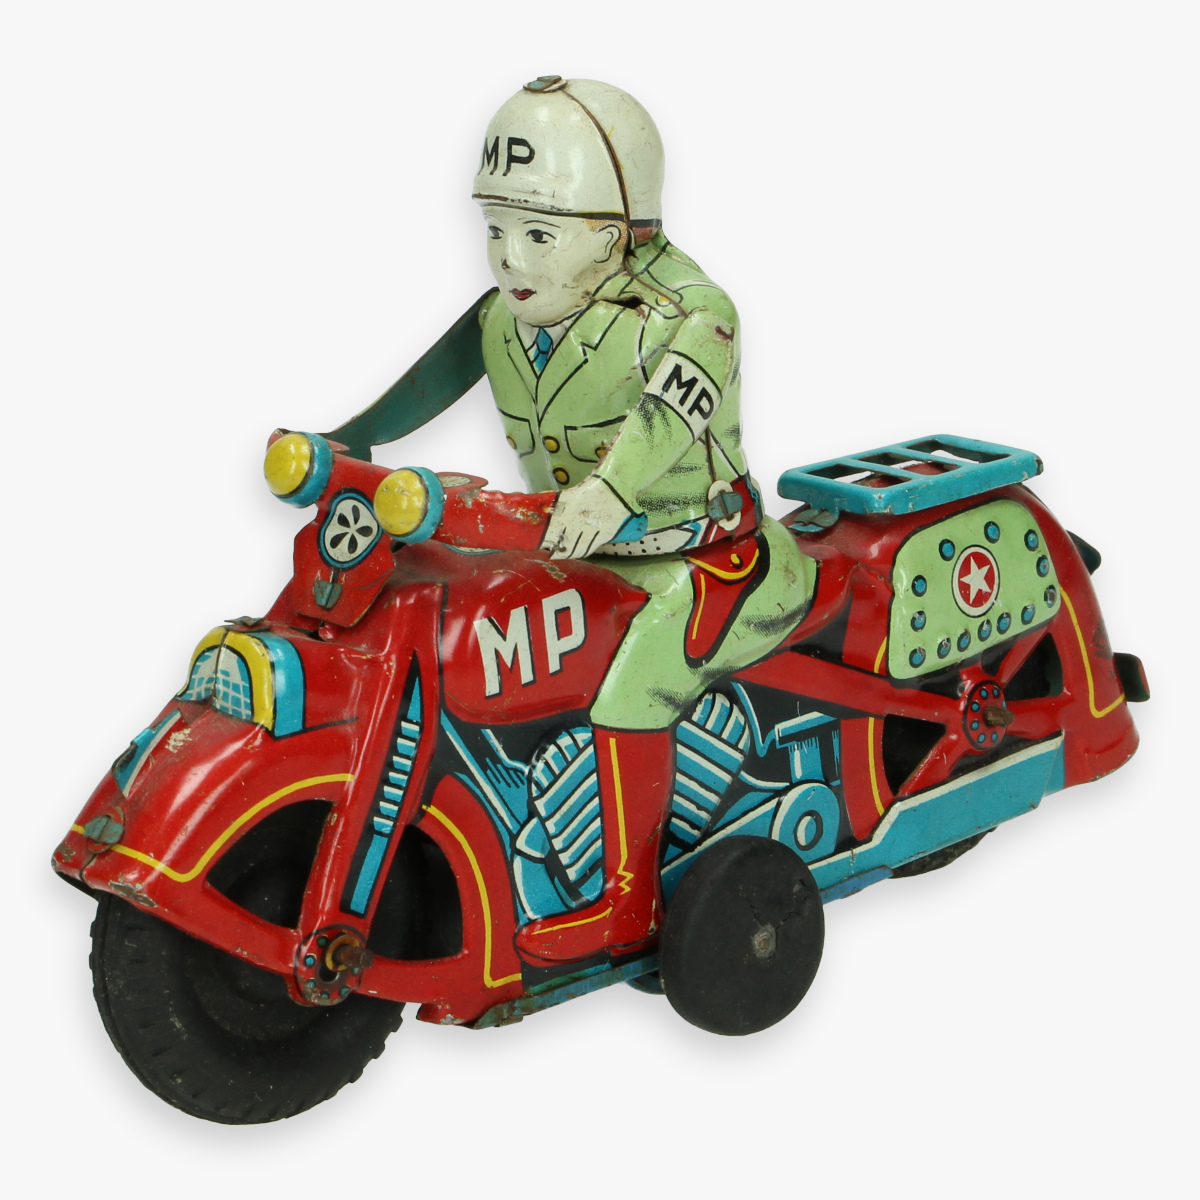 Afbeeldingen van tin toy motorcycle M.P. jaren 50 masudaya made in Japan nummerplaat usa 165